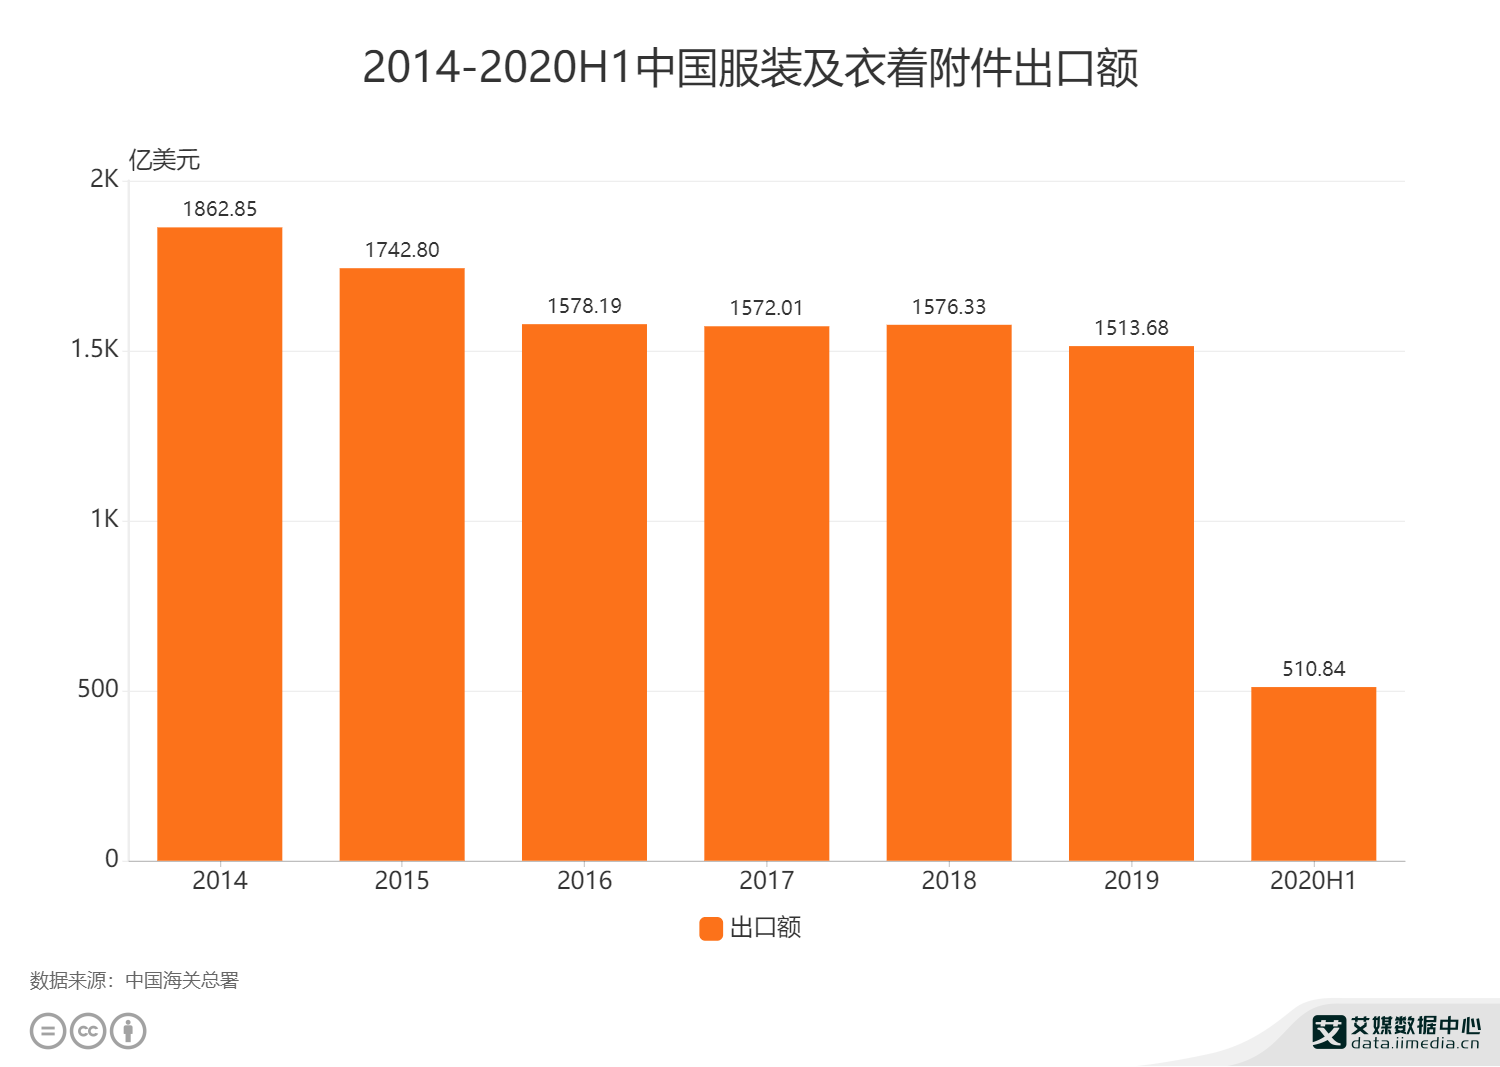 服装行业数据分析2020h1中国服装及衣着附件出口额为51084亿美元